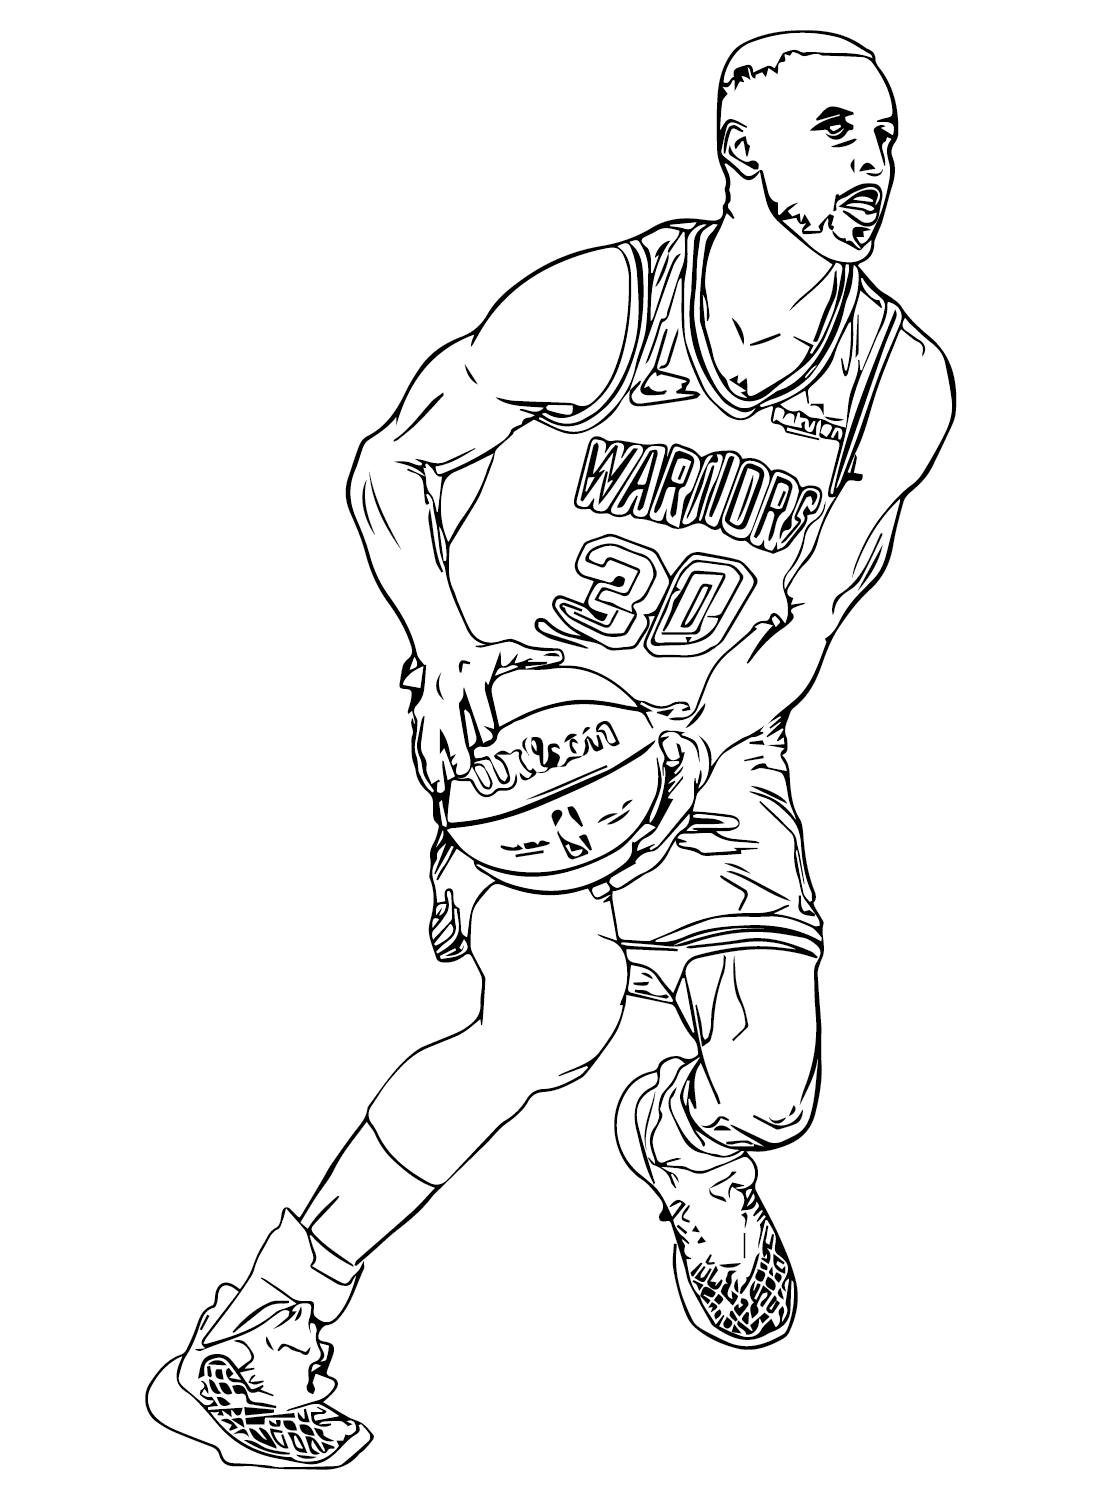 Stephen Curry Gioca a basket da Stephen Curry